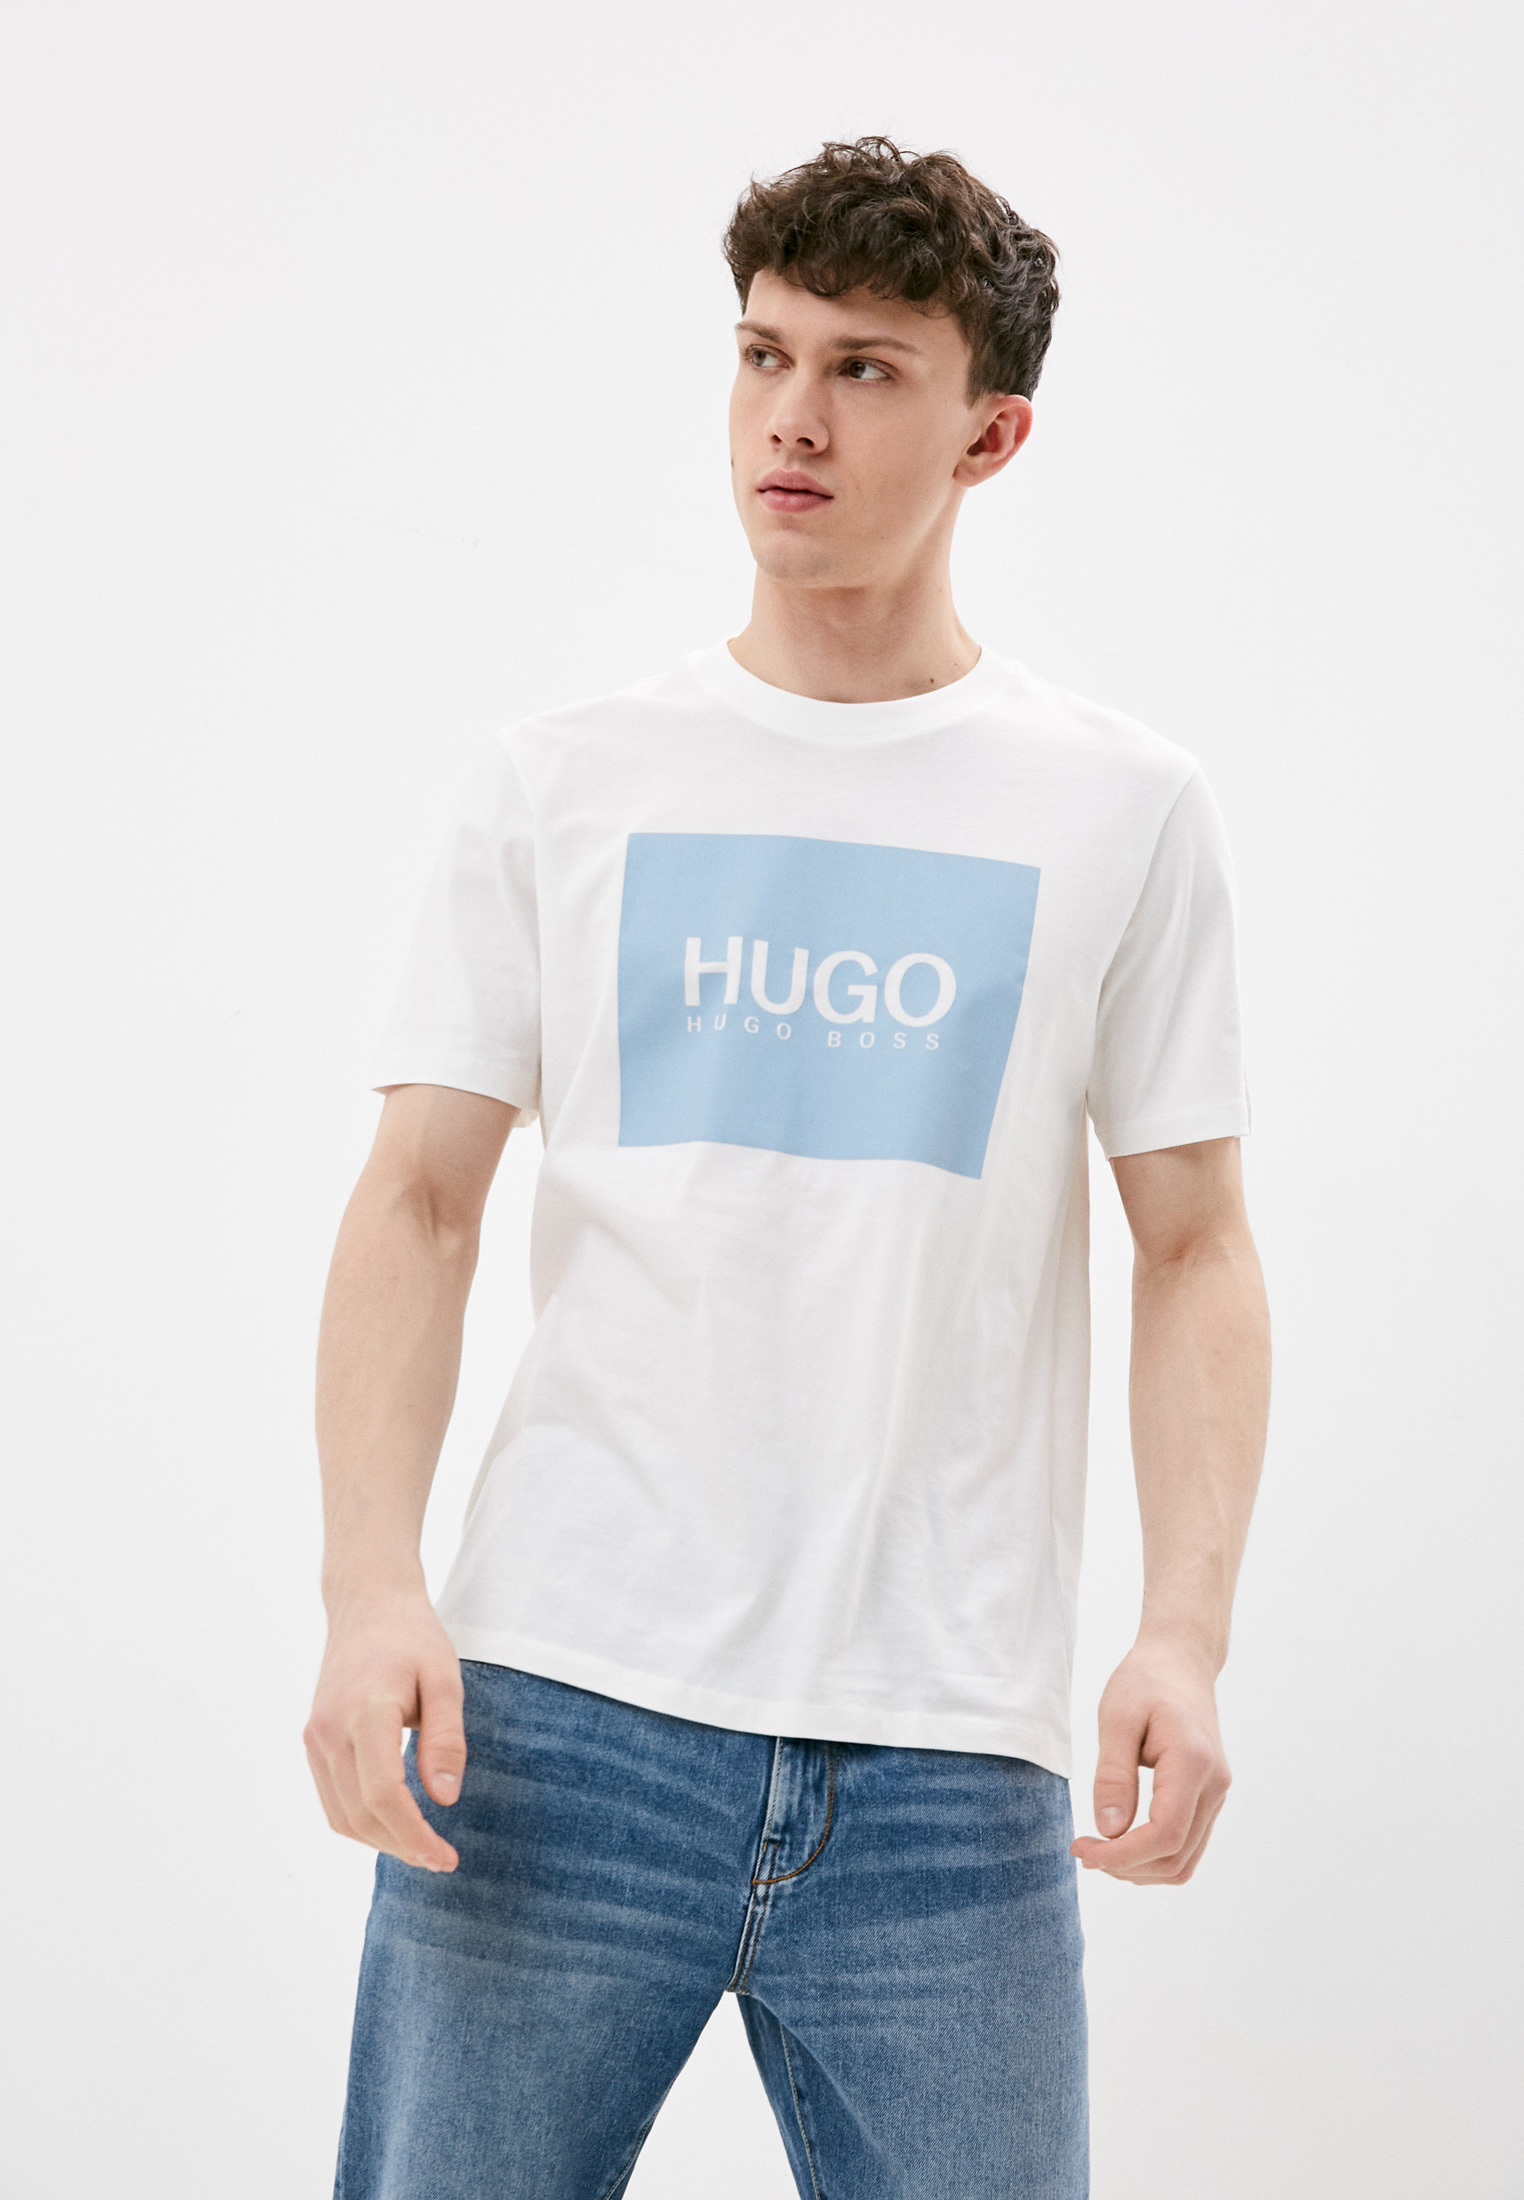 Купить футболку hugo. Футболка Hugo. Hugo футболка мужская. Майка мужская Hugo. Белая футболка Hugo.